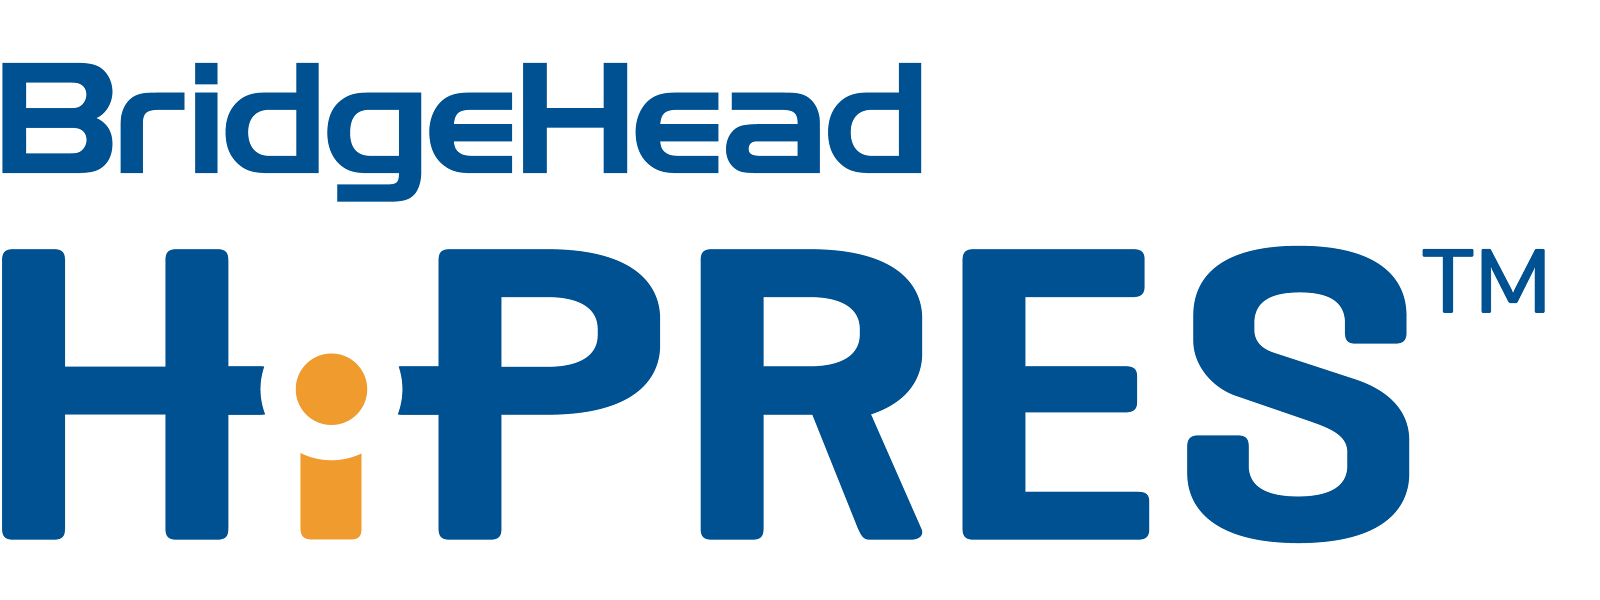 BridgeHead’s HiPRES™ logo